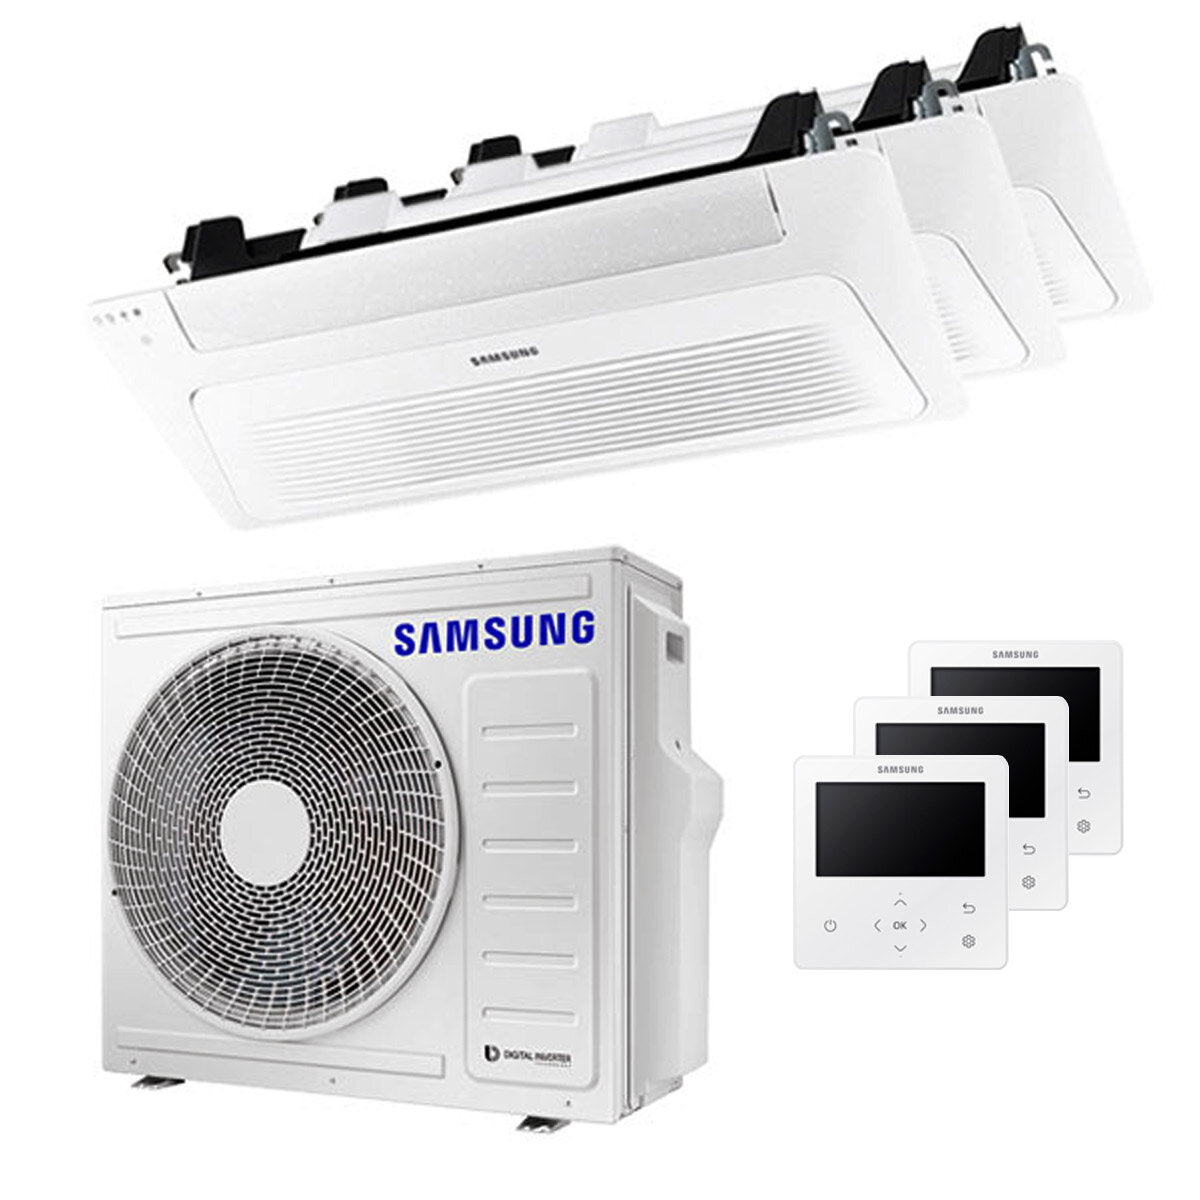 Samsung Climatiseur Cassette WindFree 1 Way trial split 12000 + 12000 + 12000 BTU inverter A++ unité extérieure 6,8 kW